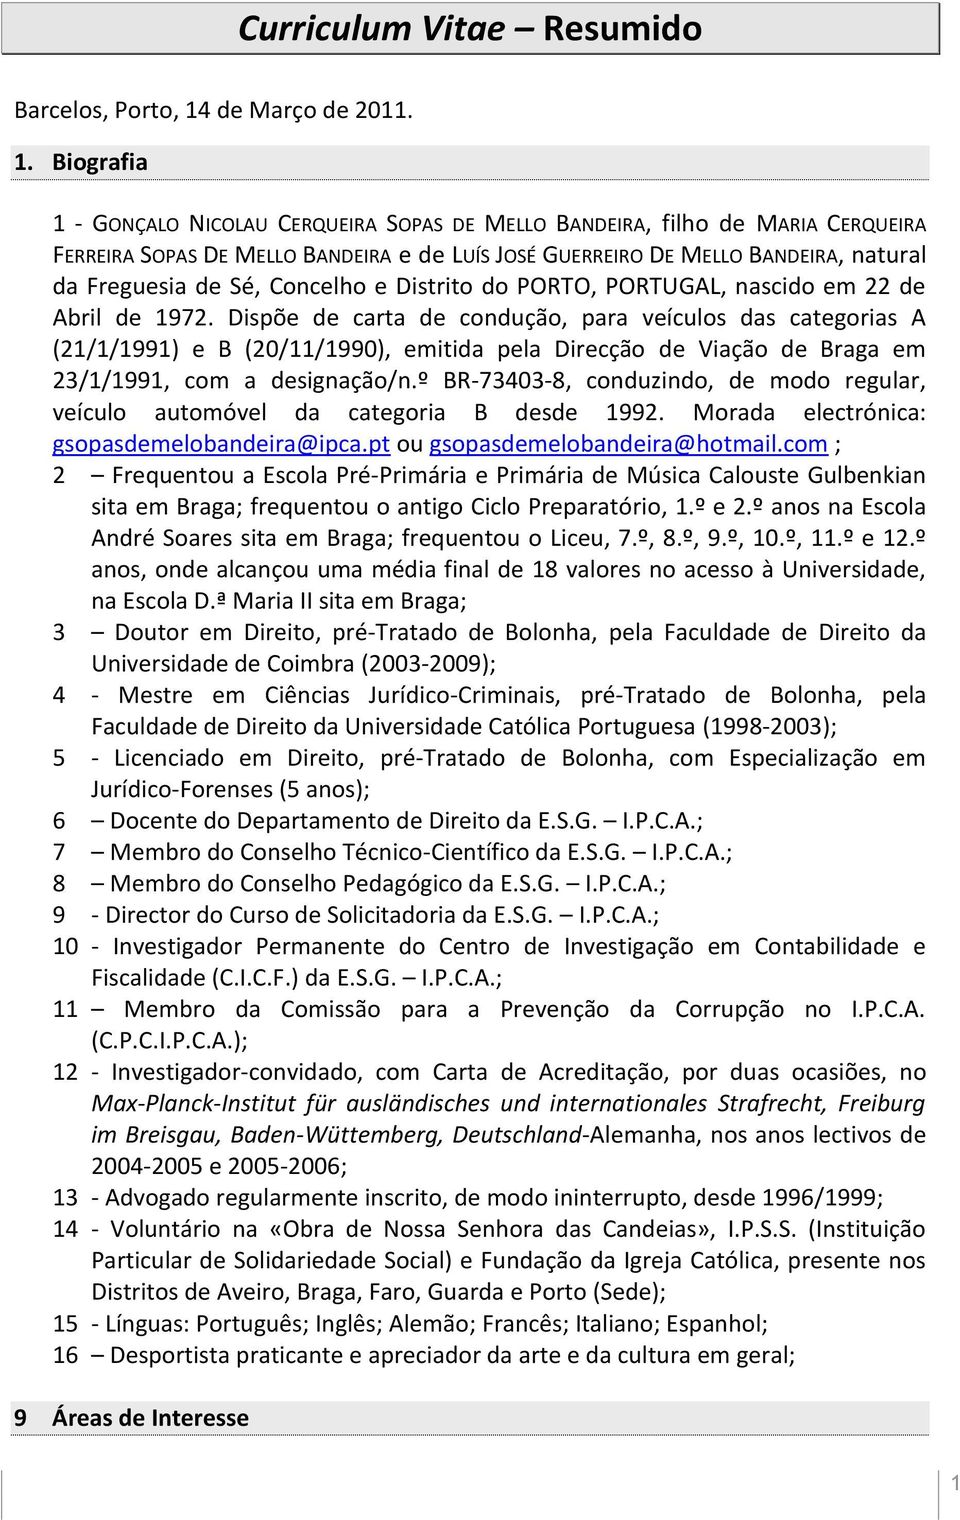 Biografia 1 - GONÇALO NICOLAU CERQUEIRA SOPAS DE MELLO BANDEIRA, filho de MARIA CERQUEIRA FERREIRA SOPAS DE MELLO BANDEIRA e de LUÍS JOSÉ GUERREIRO DE MELLO BANDEIRA, natural da Freguesia de Sé,